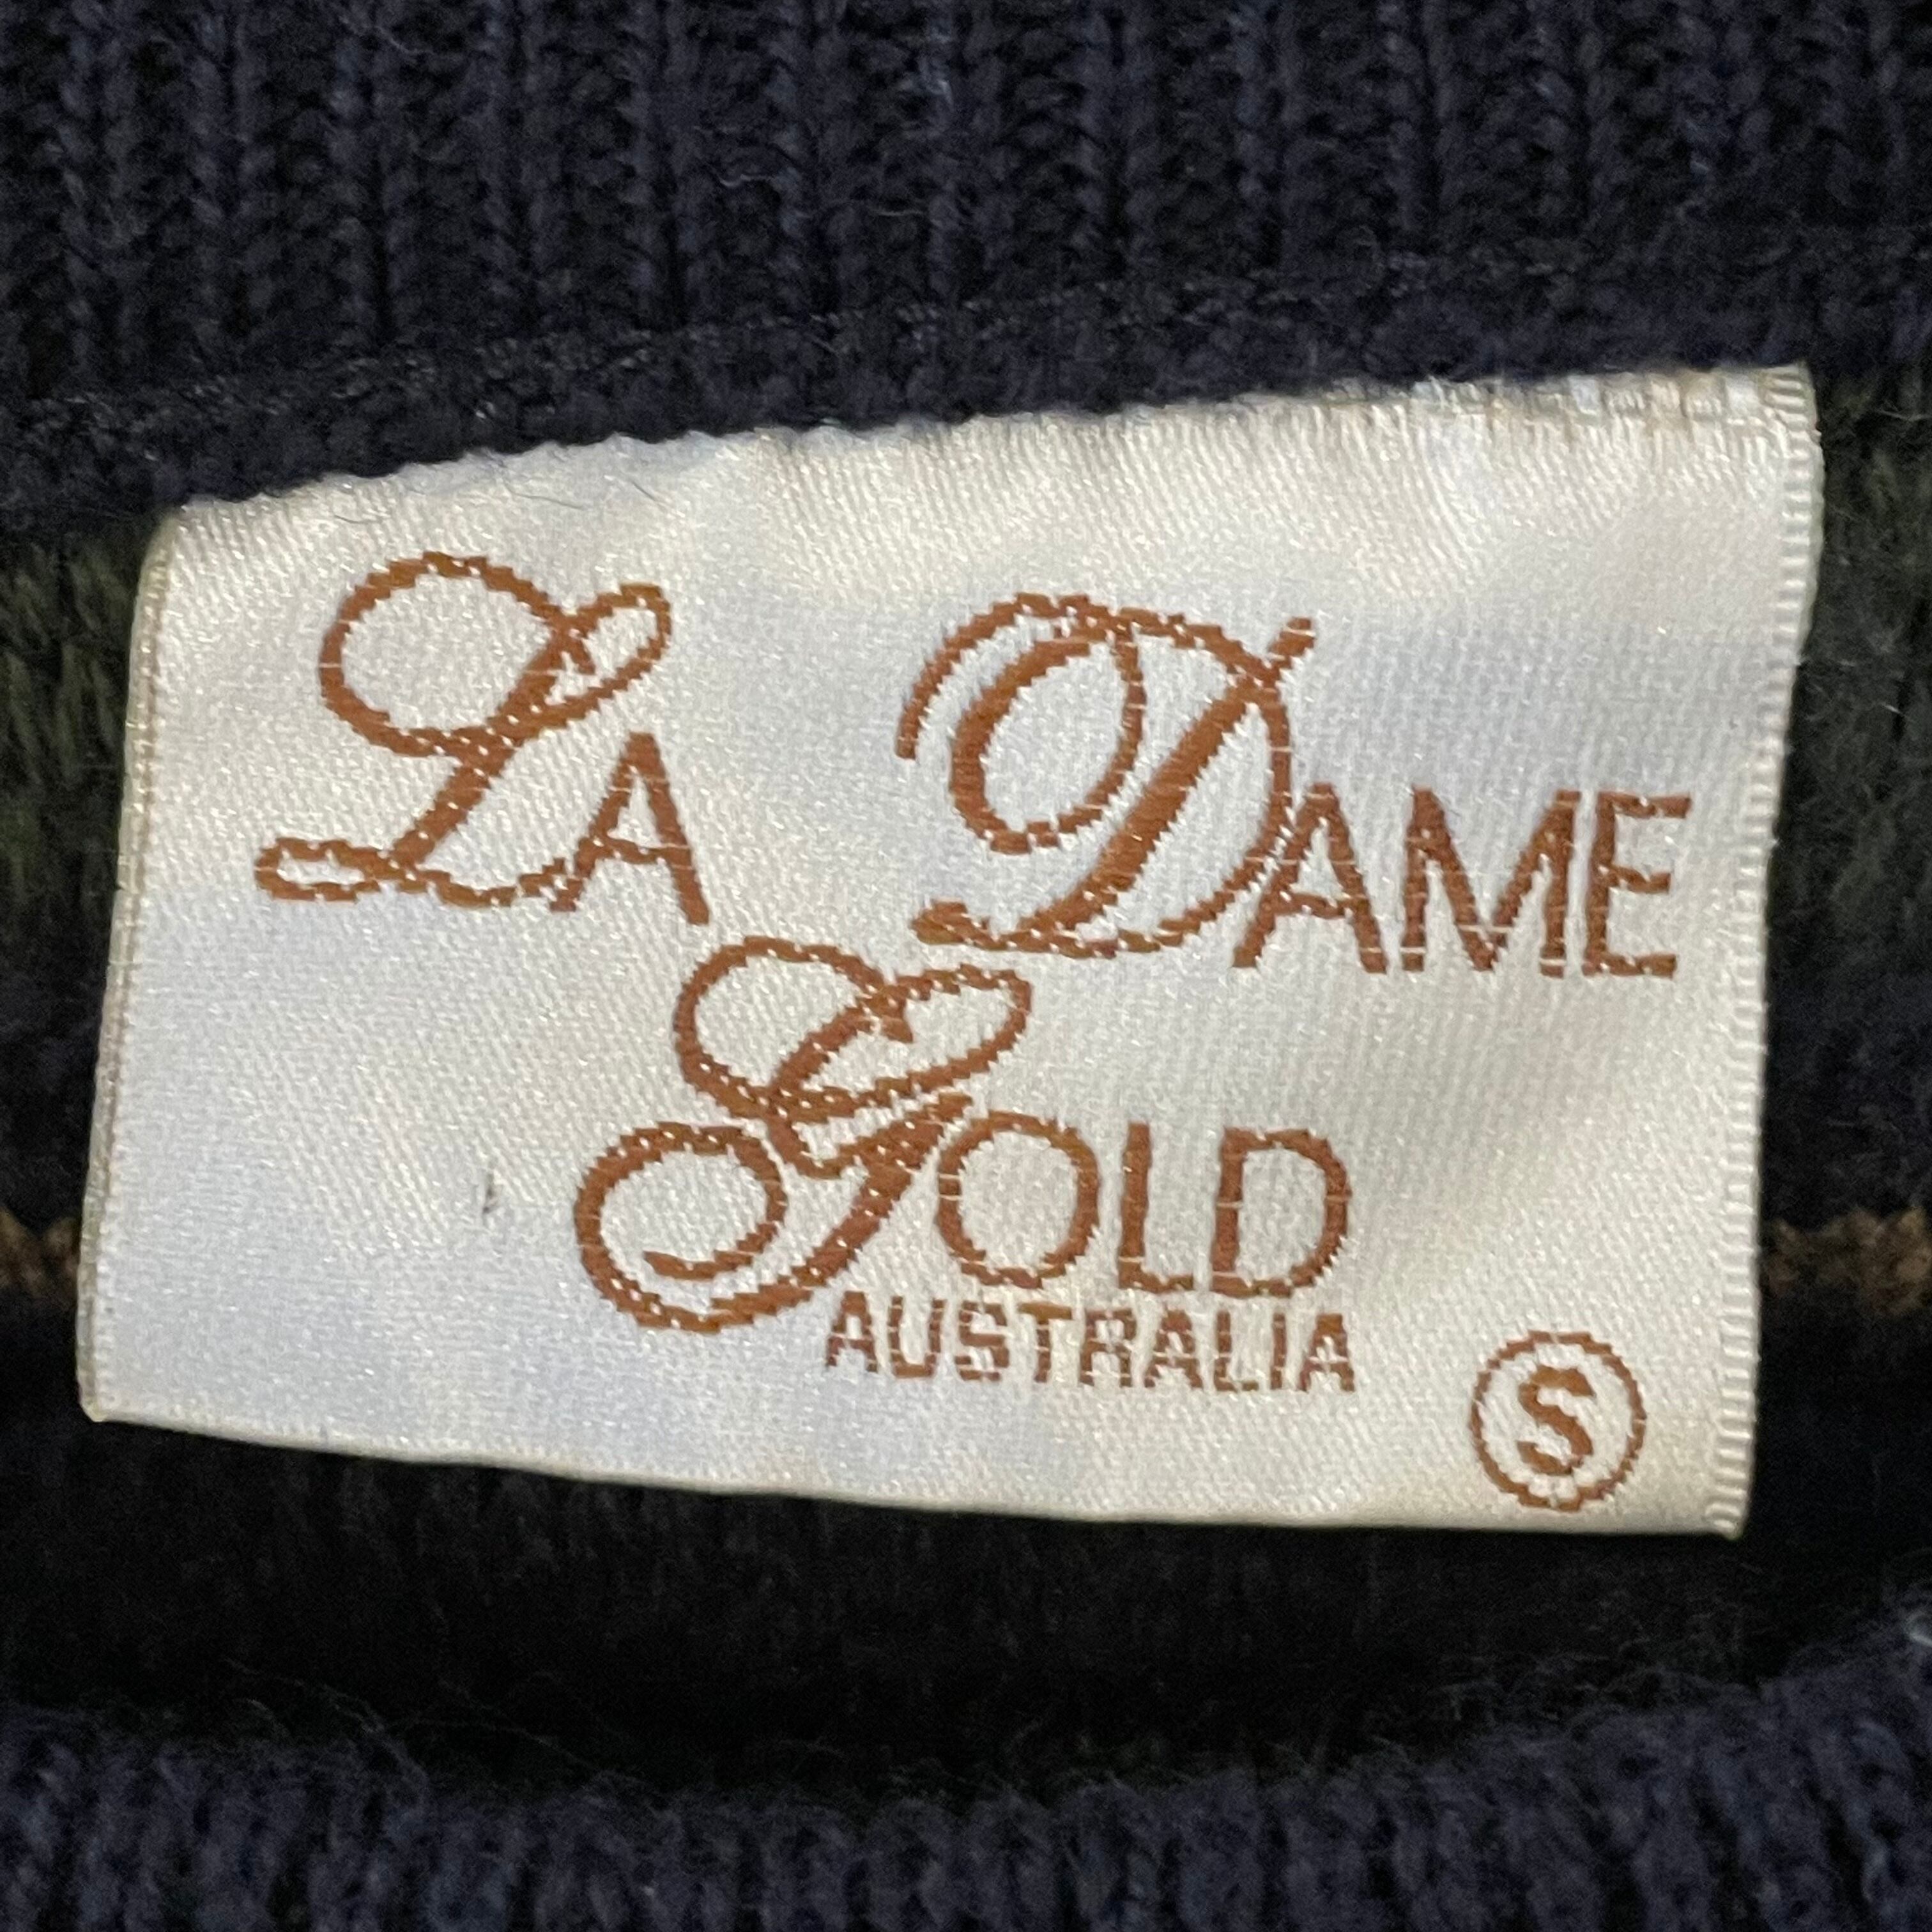 La Dame Goldオーストラリア製 3Dニット セーター 柄ニット 柄物